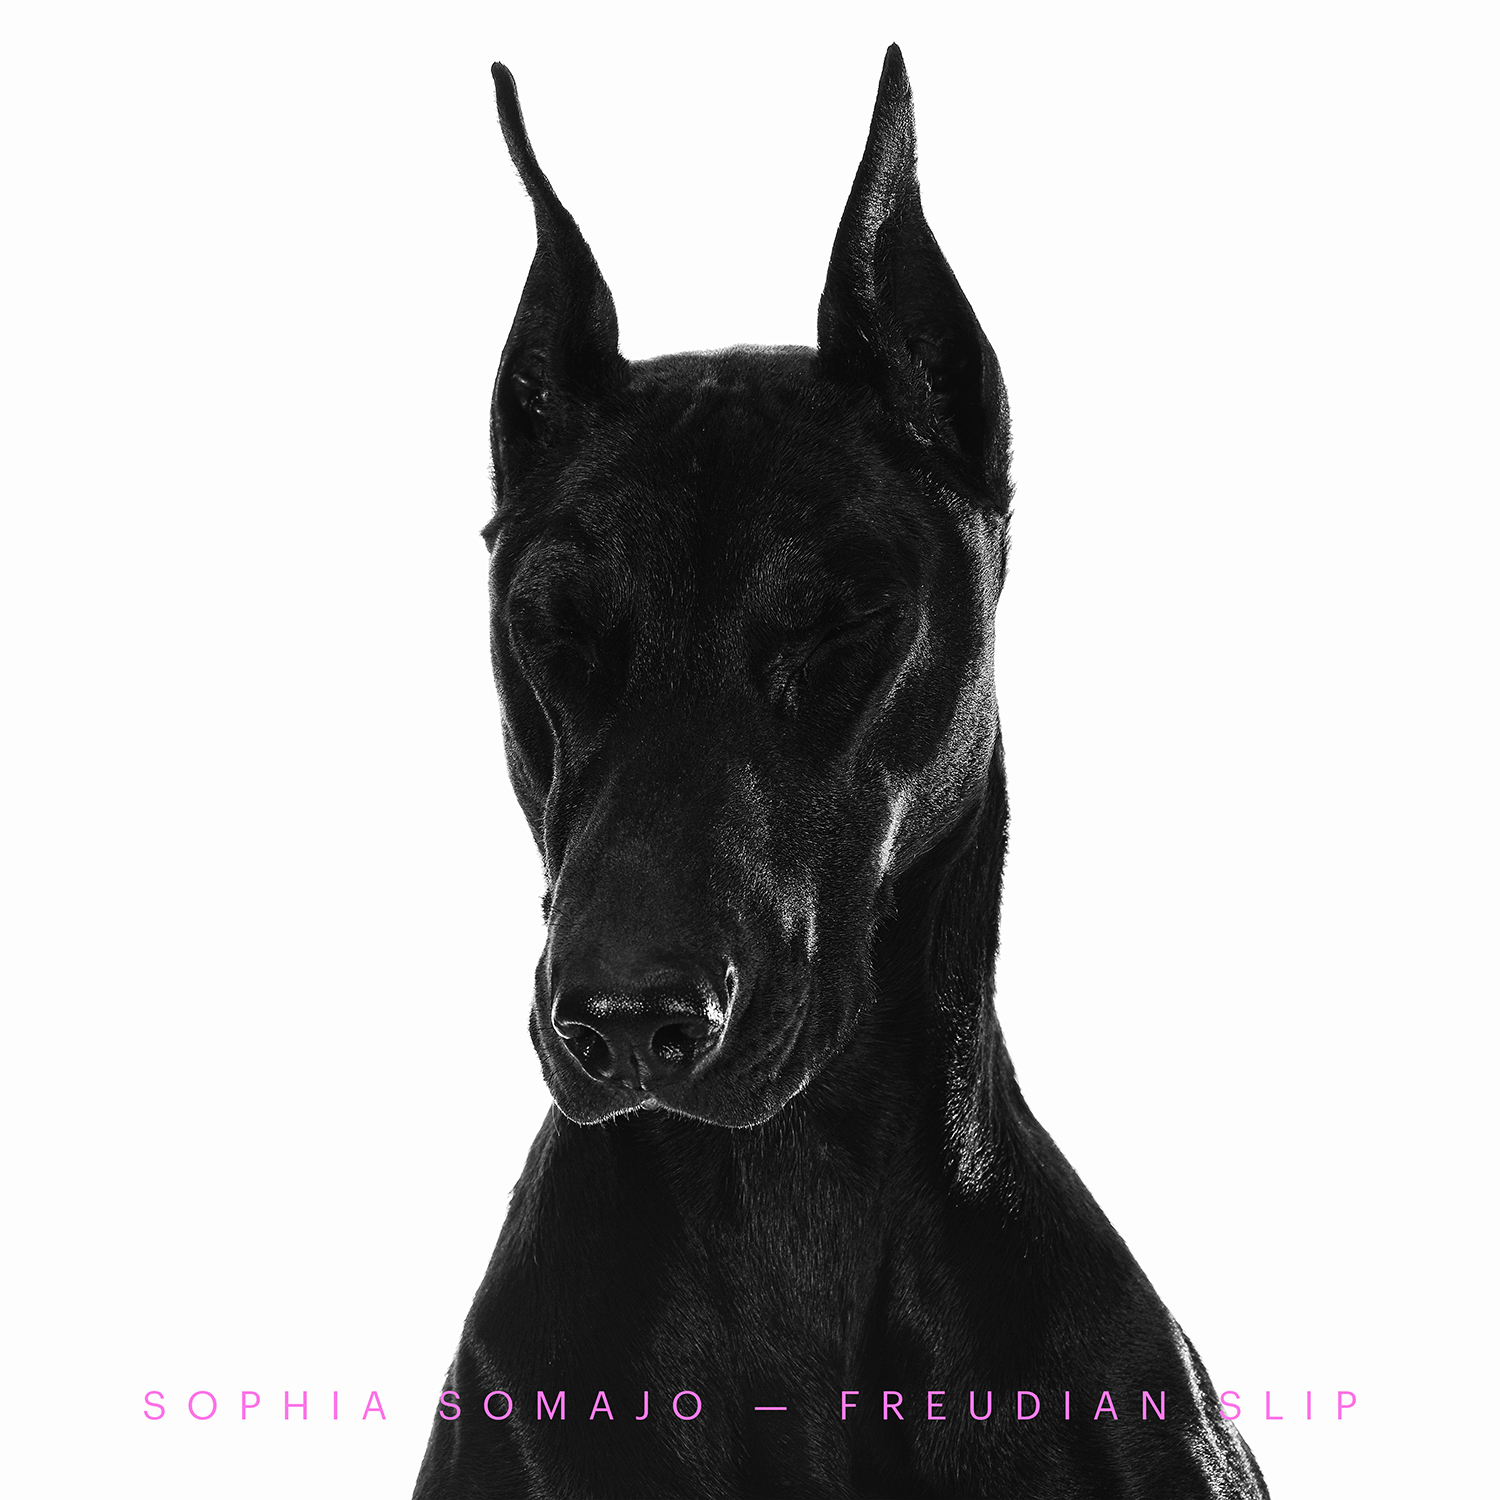 Sophia-Somajo-Freudian-Slip-_album-cover